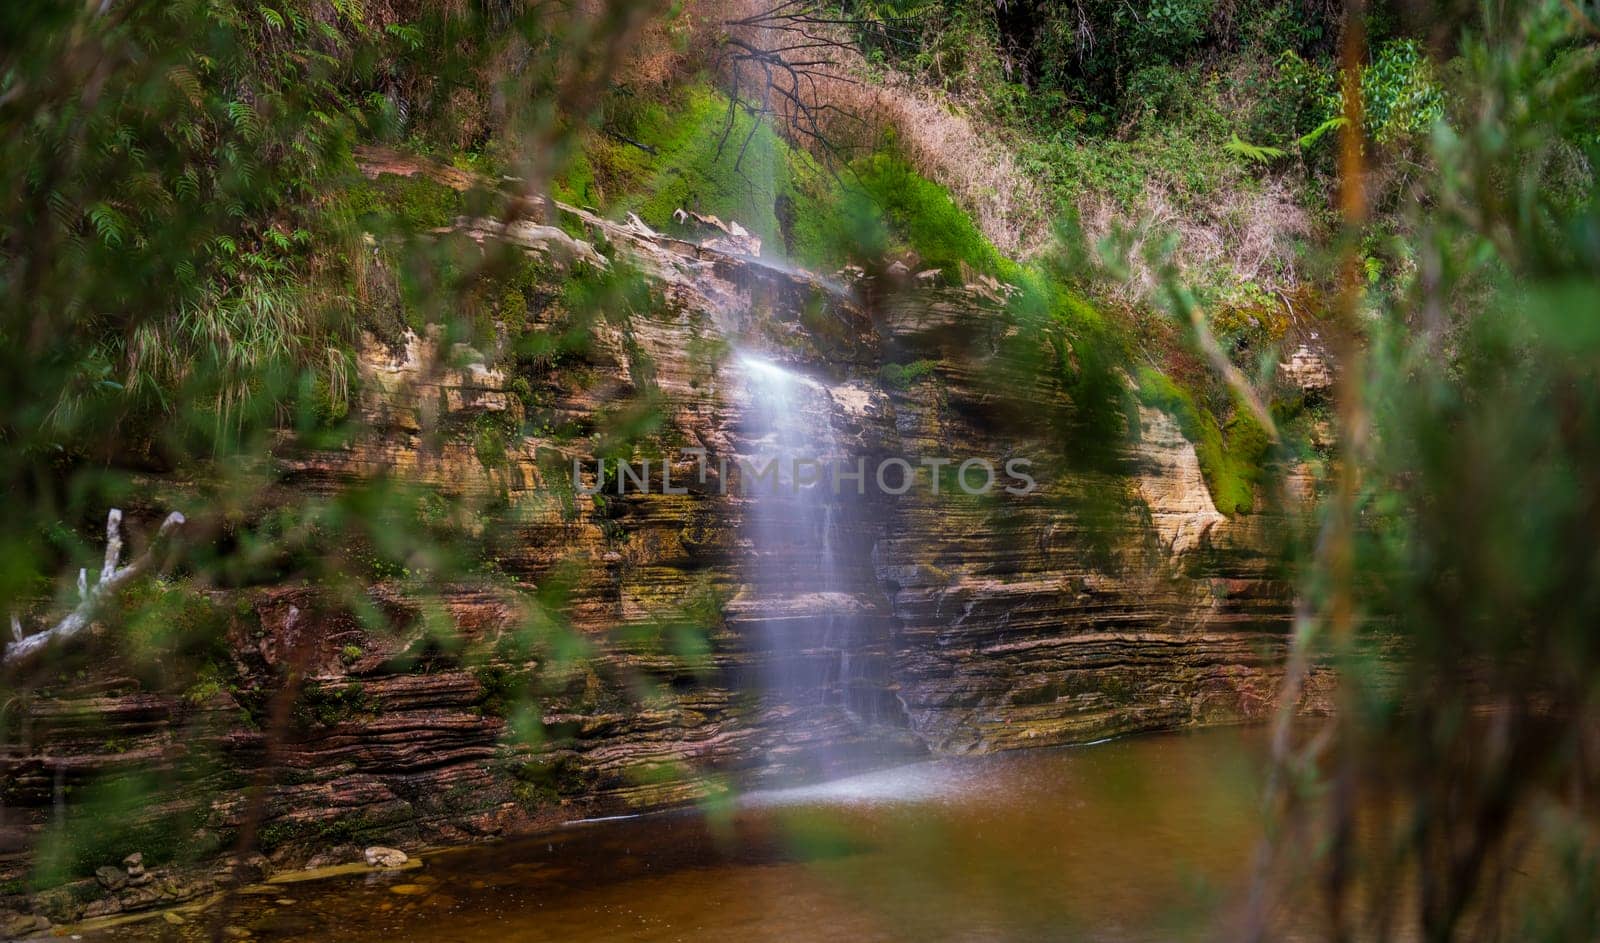 Serene Waterfall Oasis Hidden in Lush Greenery by FerradalFCG